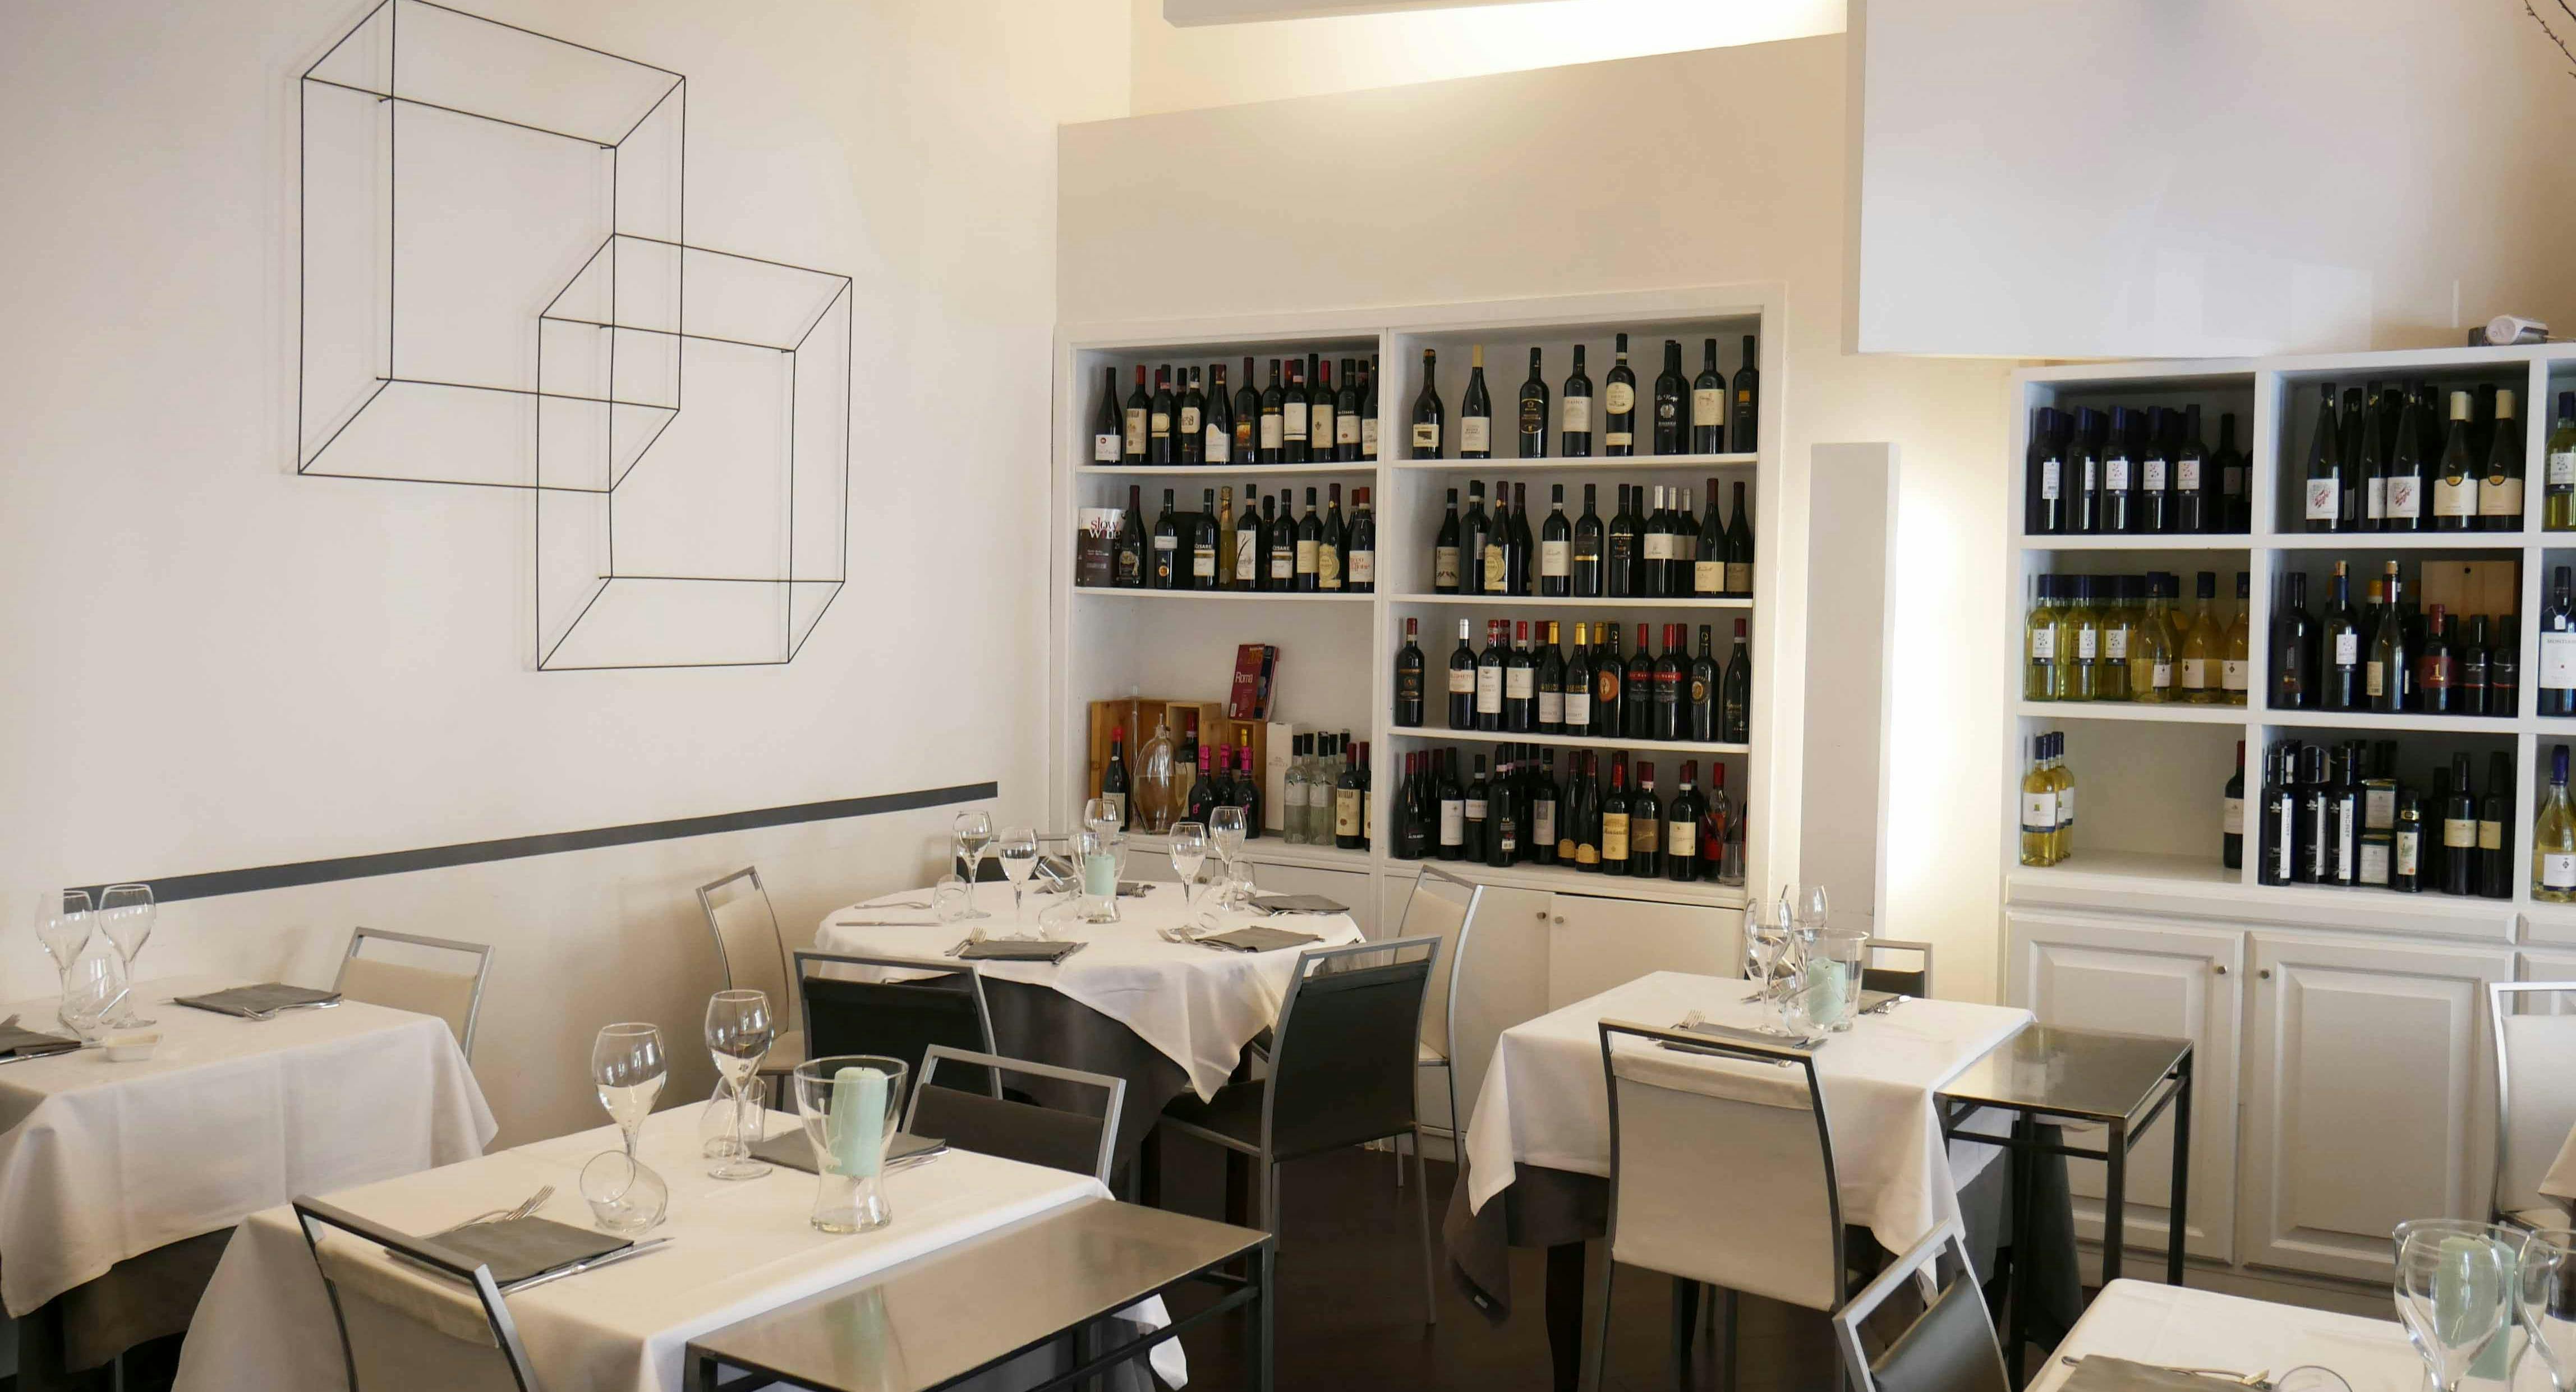 Photo of restaurant Ristorante Gianni e Simona in Prati, Rome